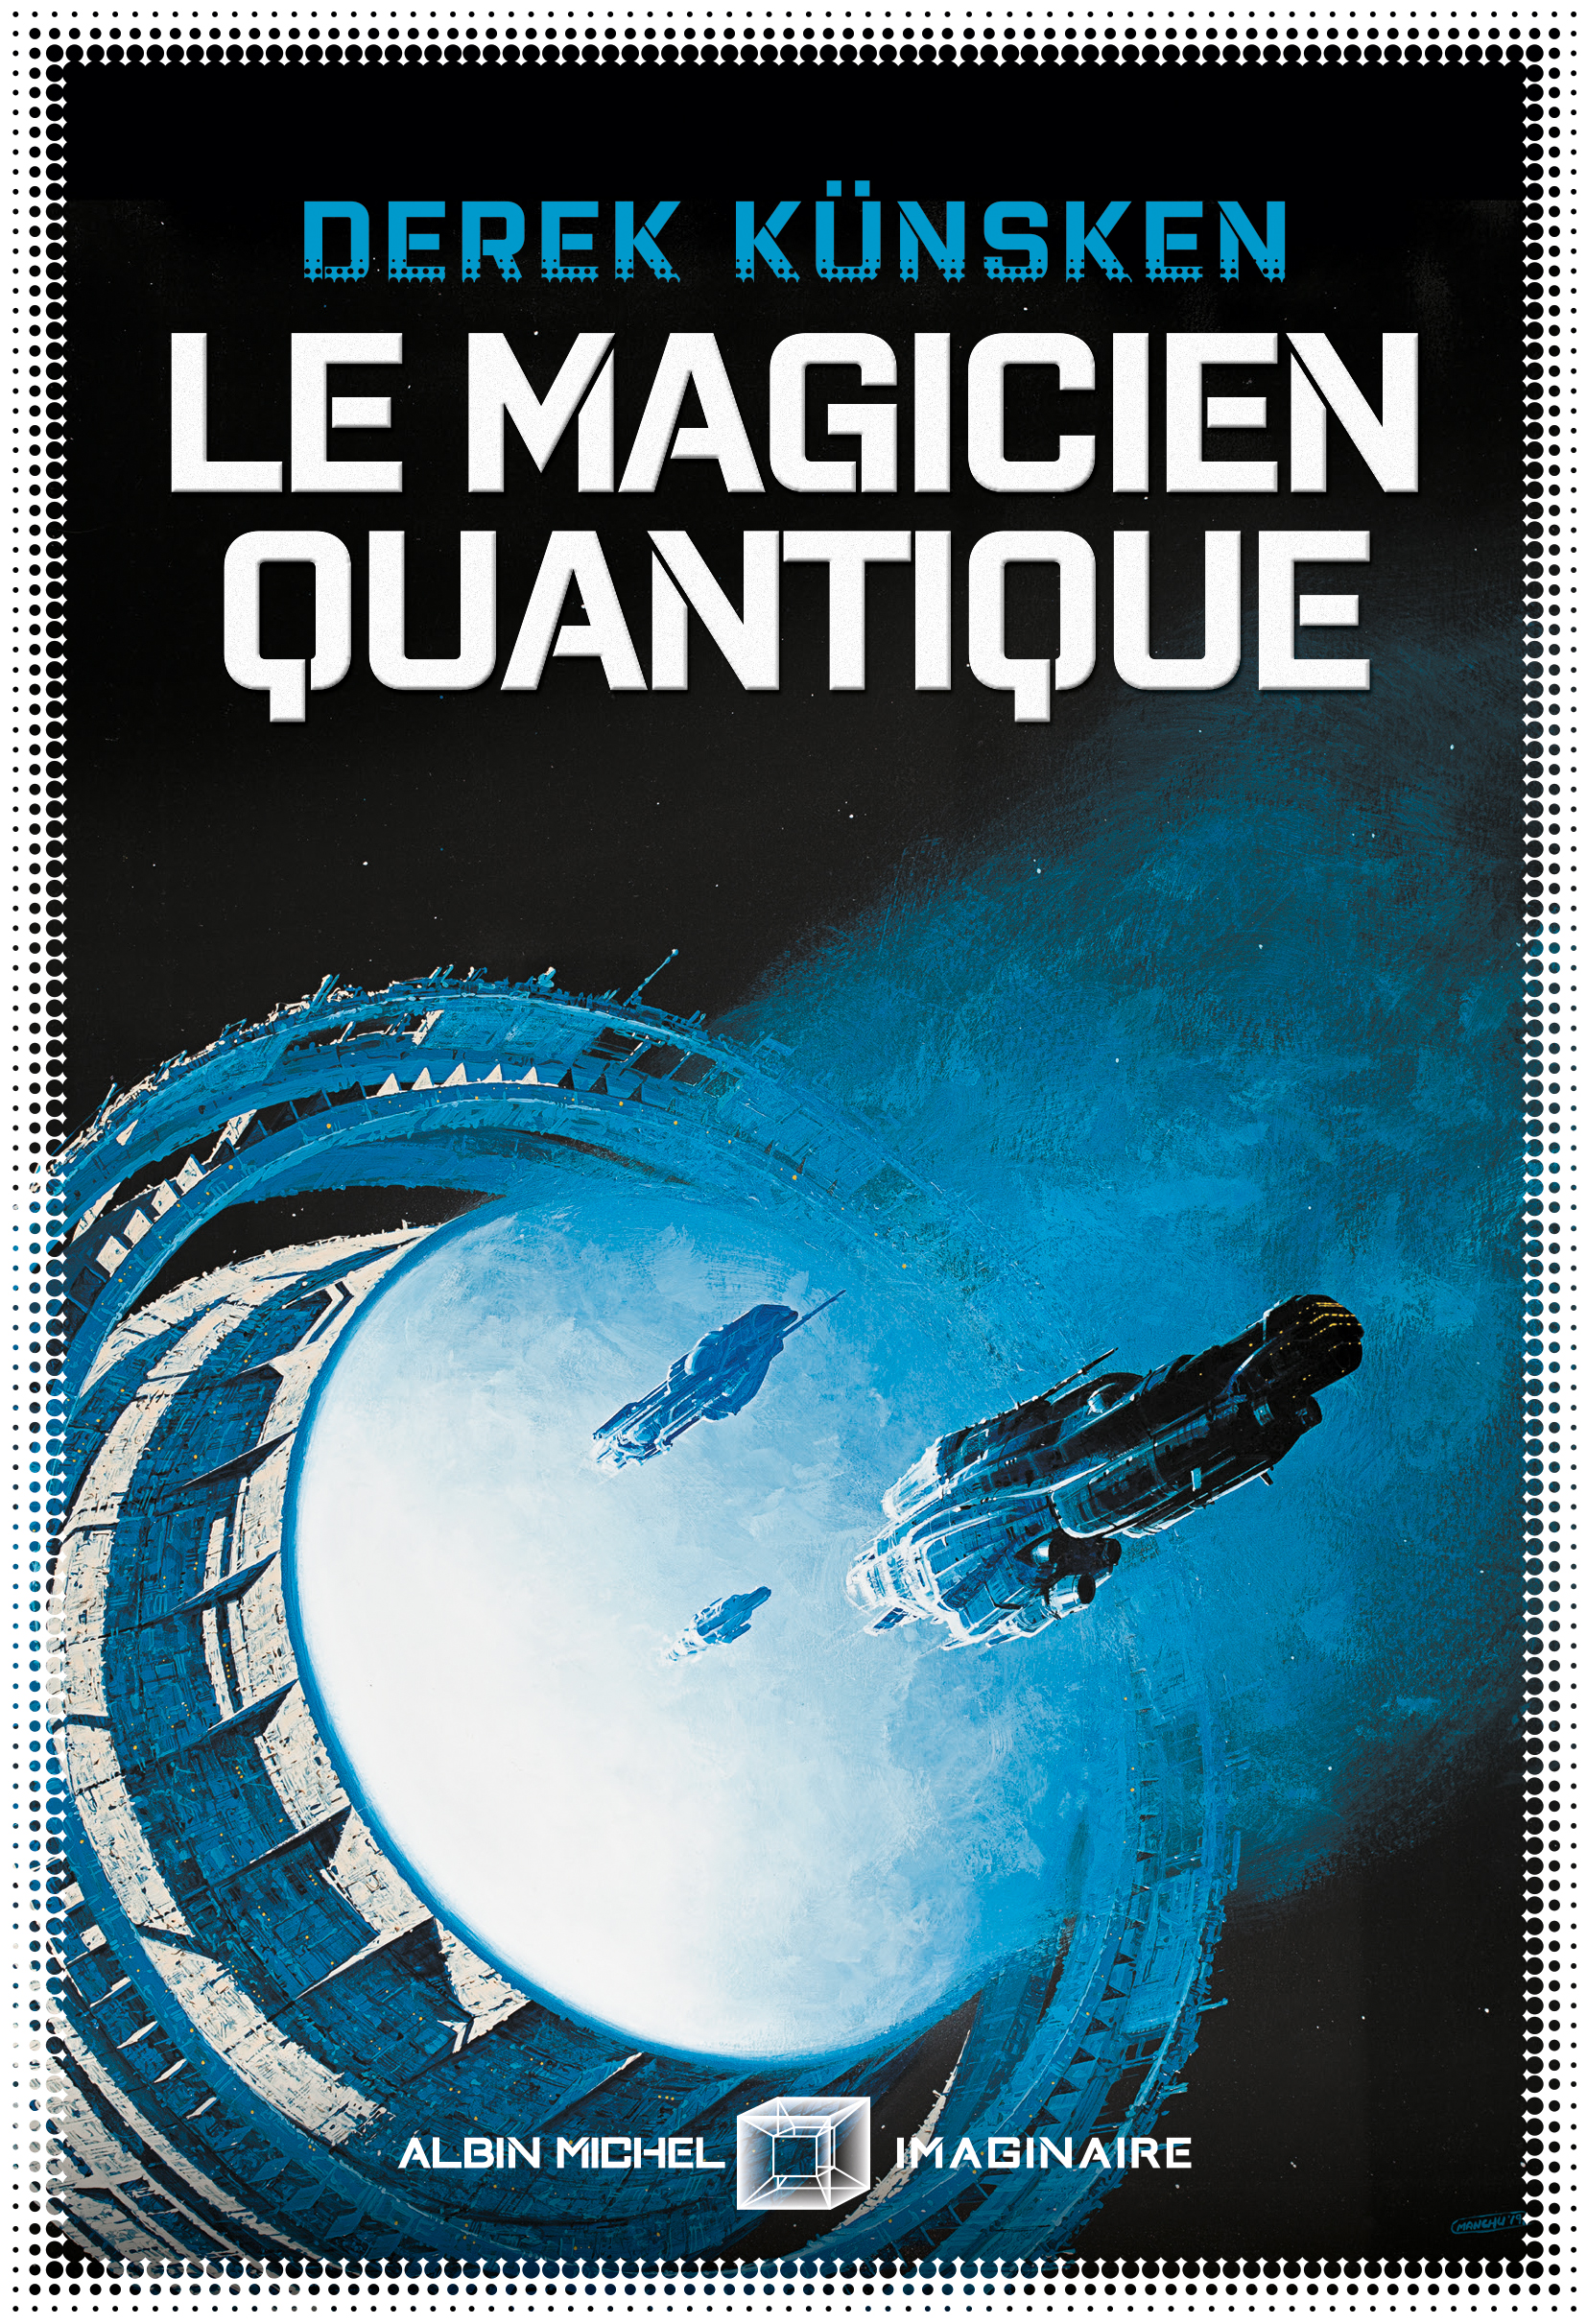 Couverture du livre Le Magicien quantique